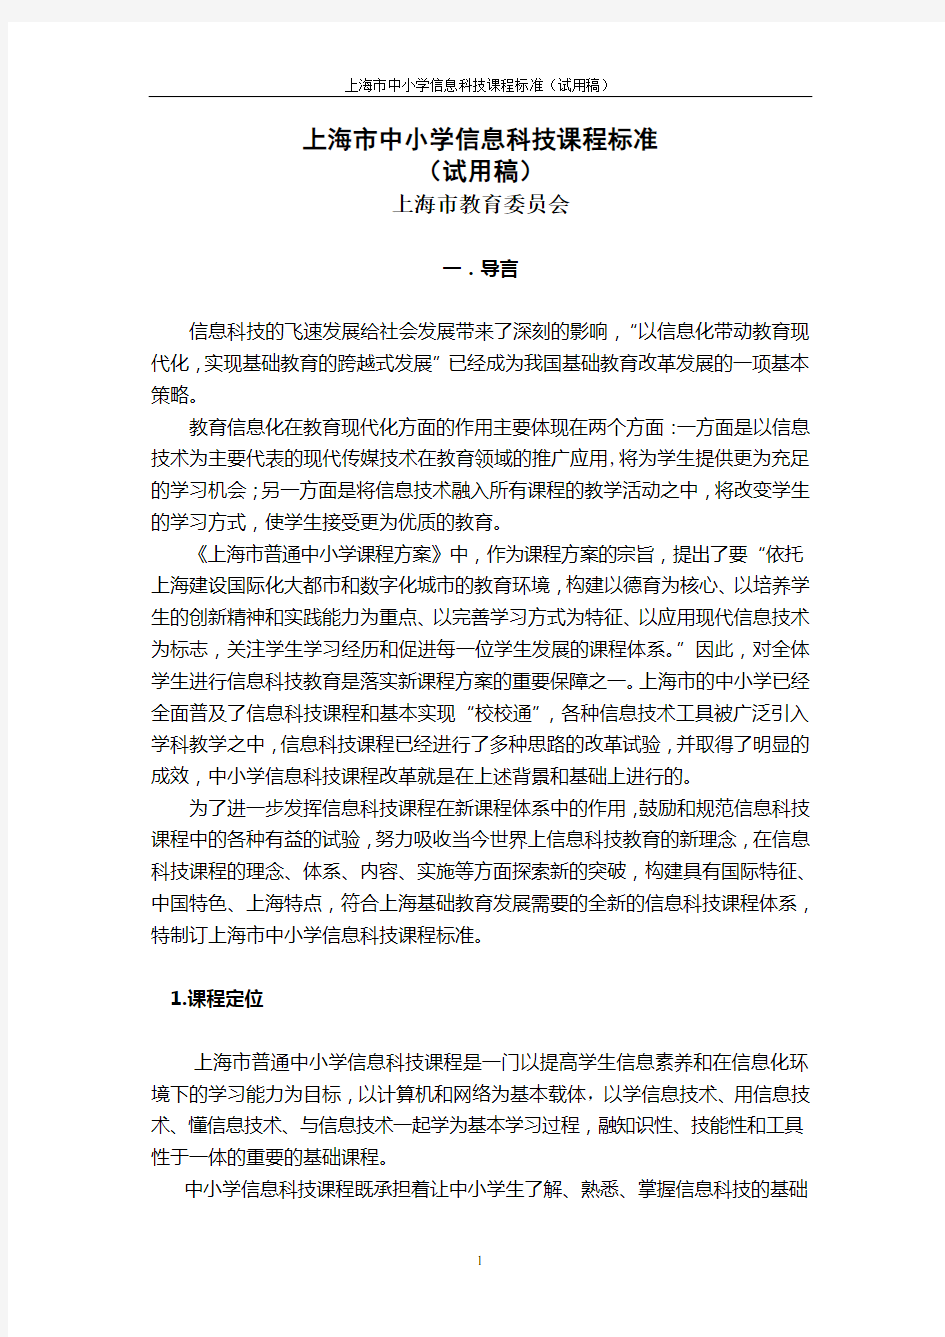 上海中小学信息科技课程指导纲要